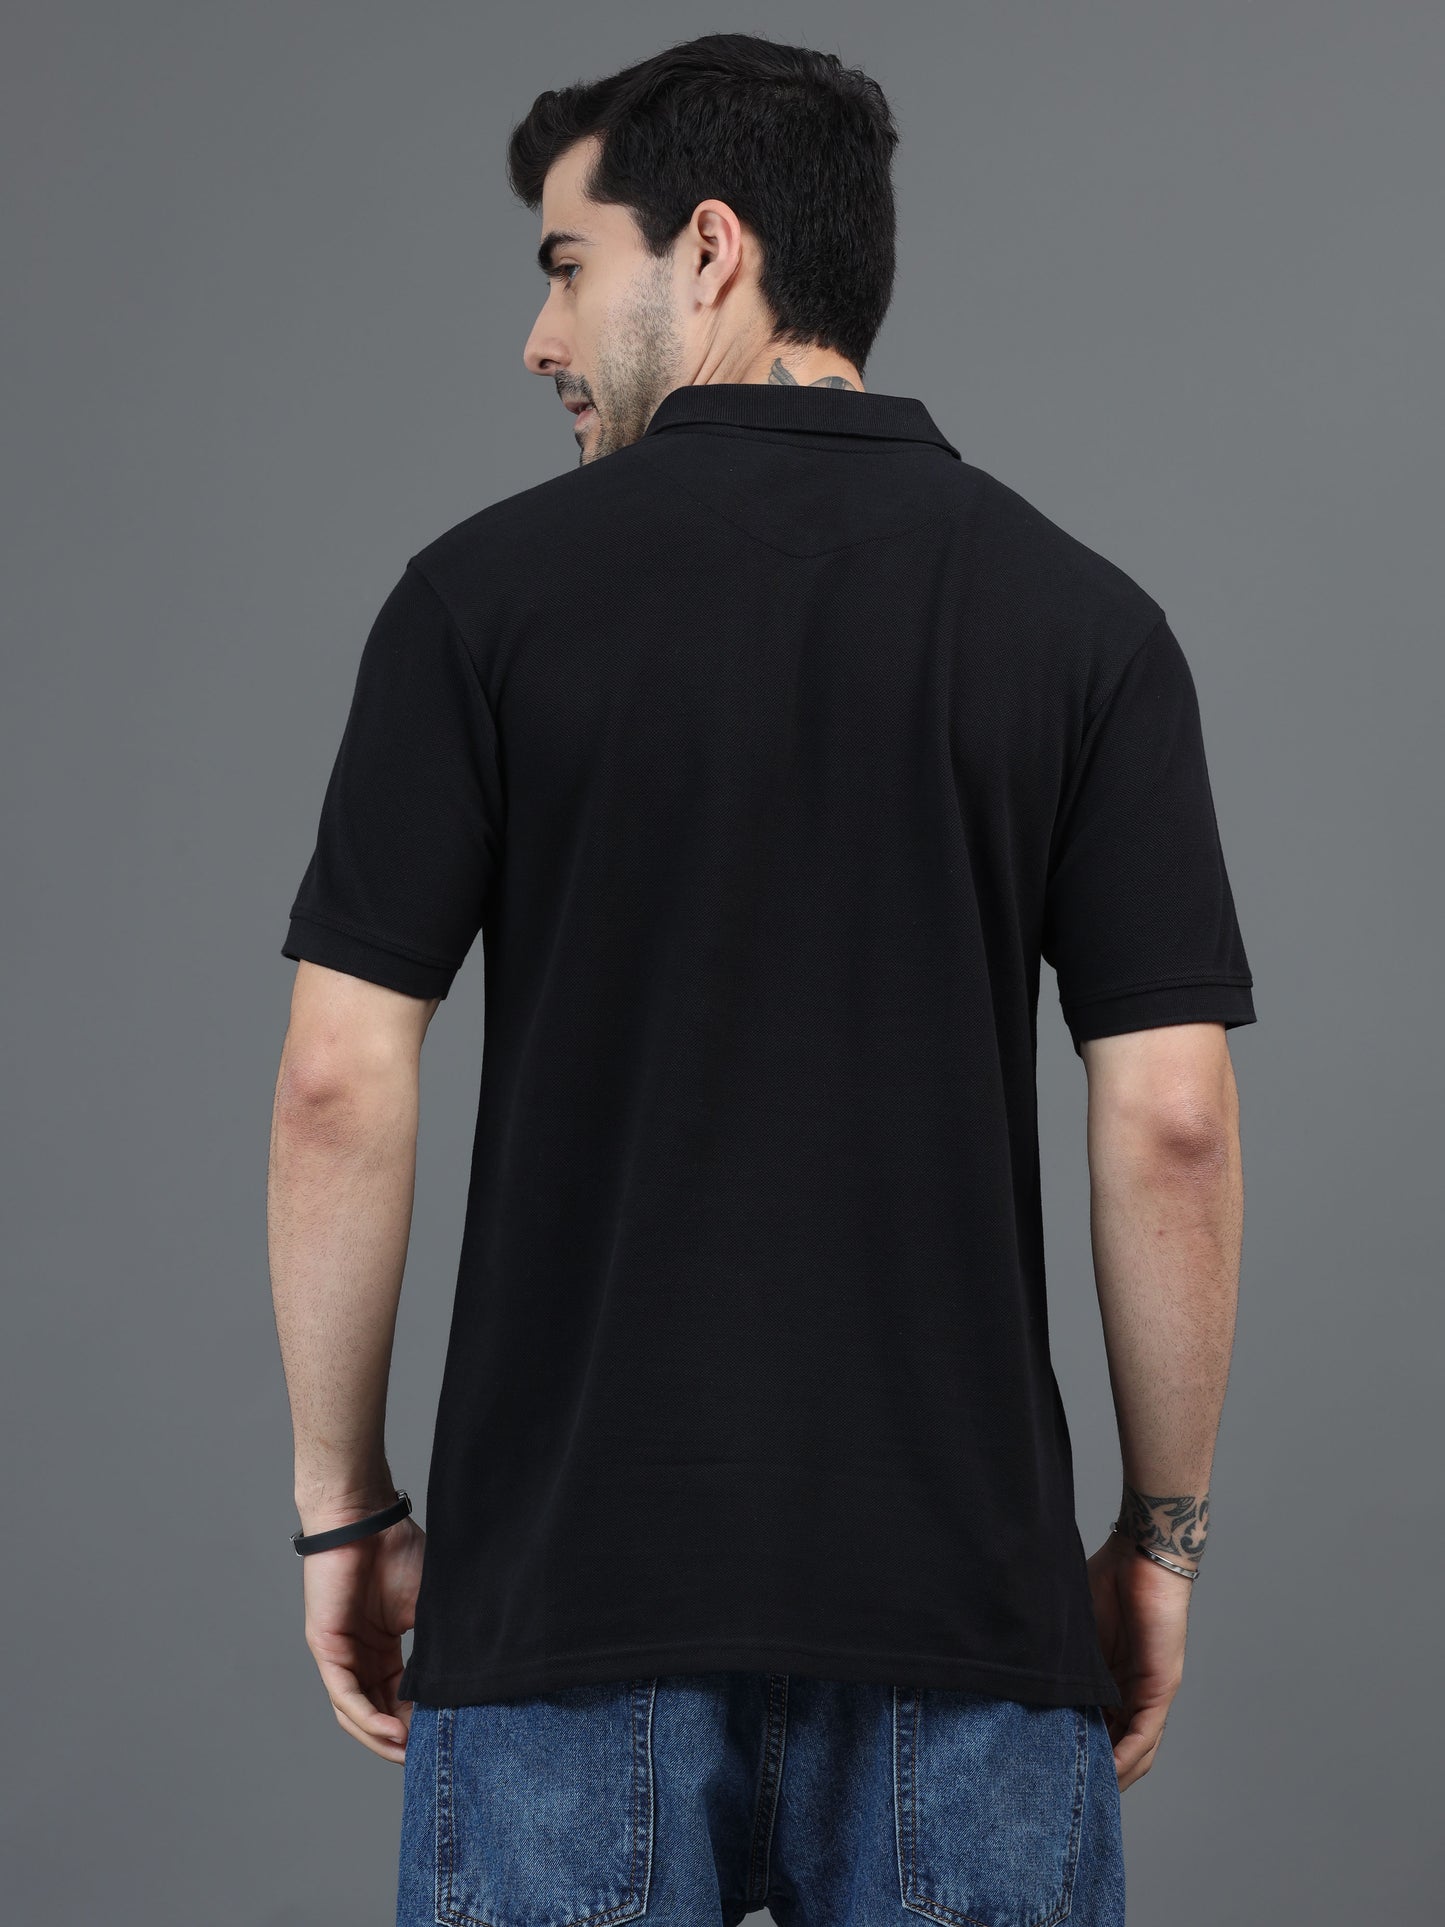 Black T Shirt for Men